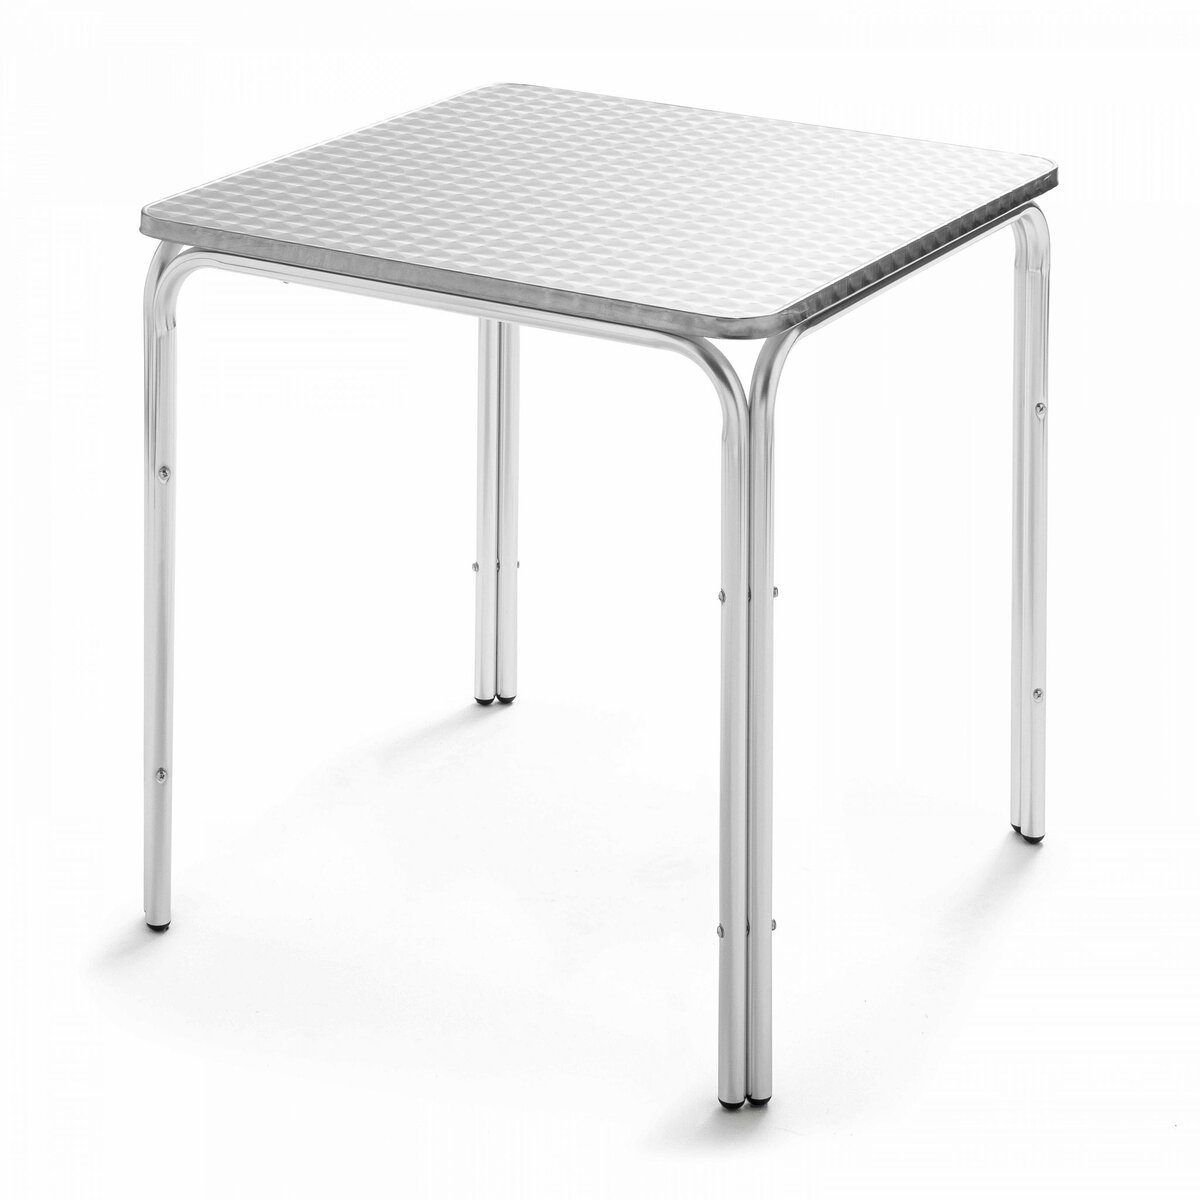 Table de jardin carrée en aluminium